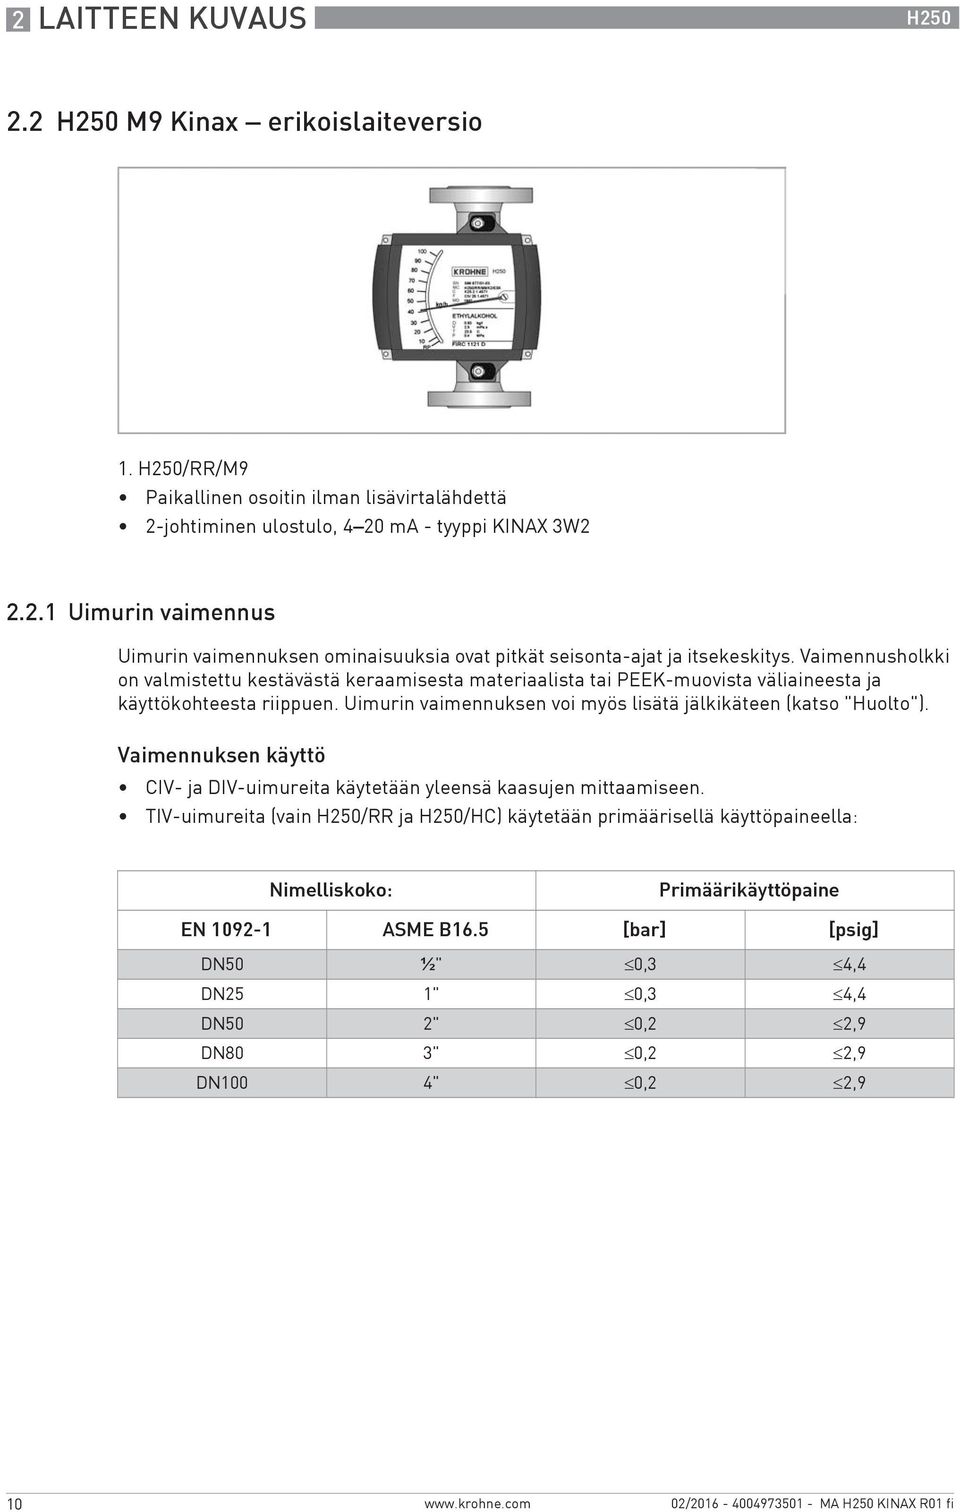 Vaimennuksen käyttö CIV- ja DIV-uimureita käytetään yleensä kaasujen mittaamiseen.